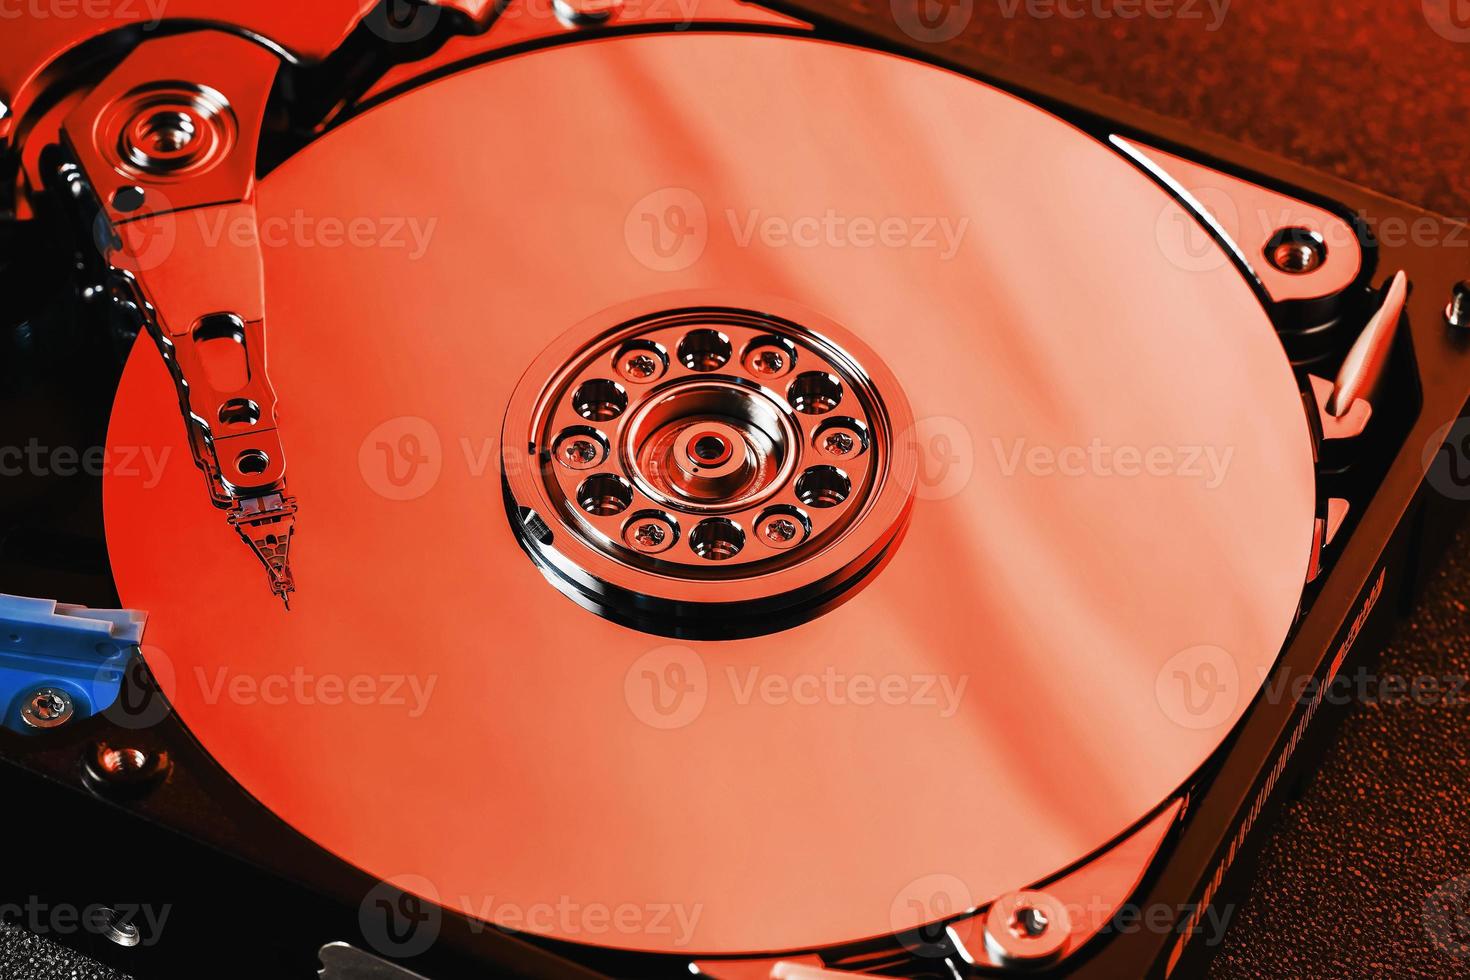 el disco duro del ordenador hdd es rojo, con efecto espejo. el disco duro de la computadora se ha abierto. foto